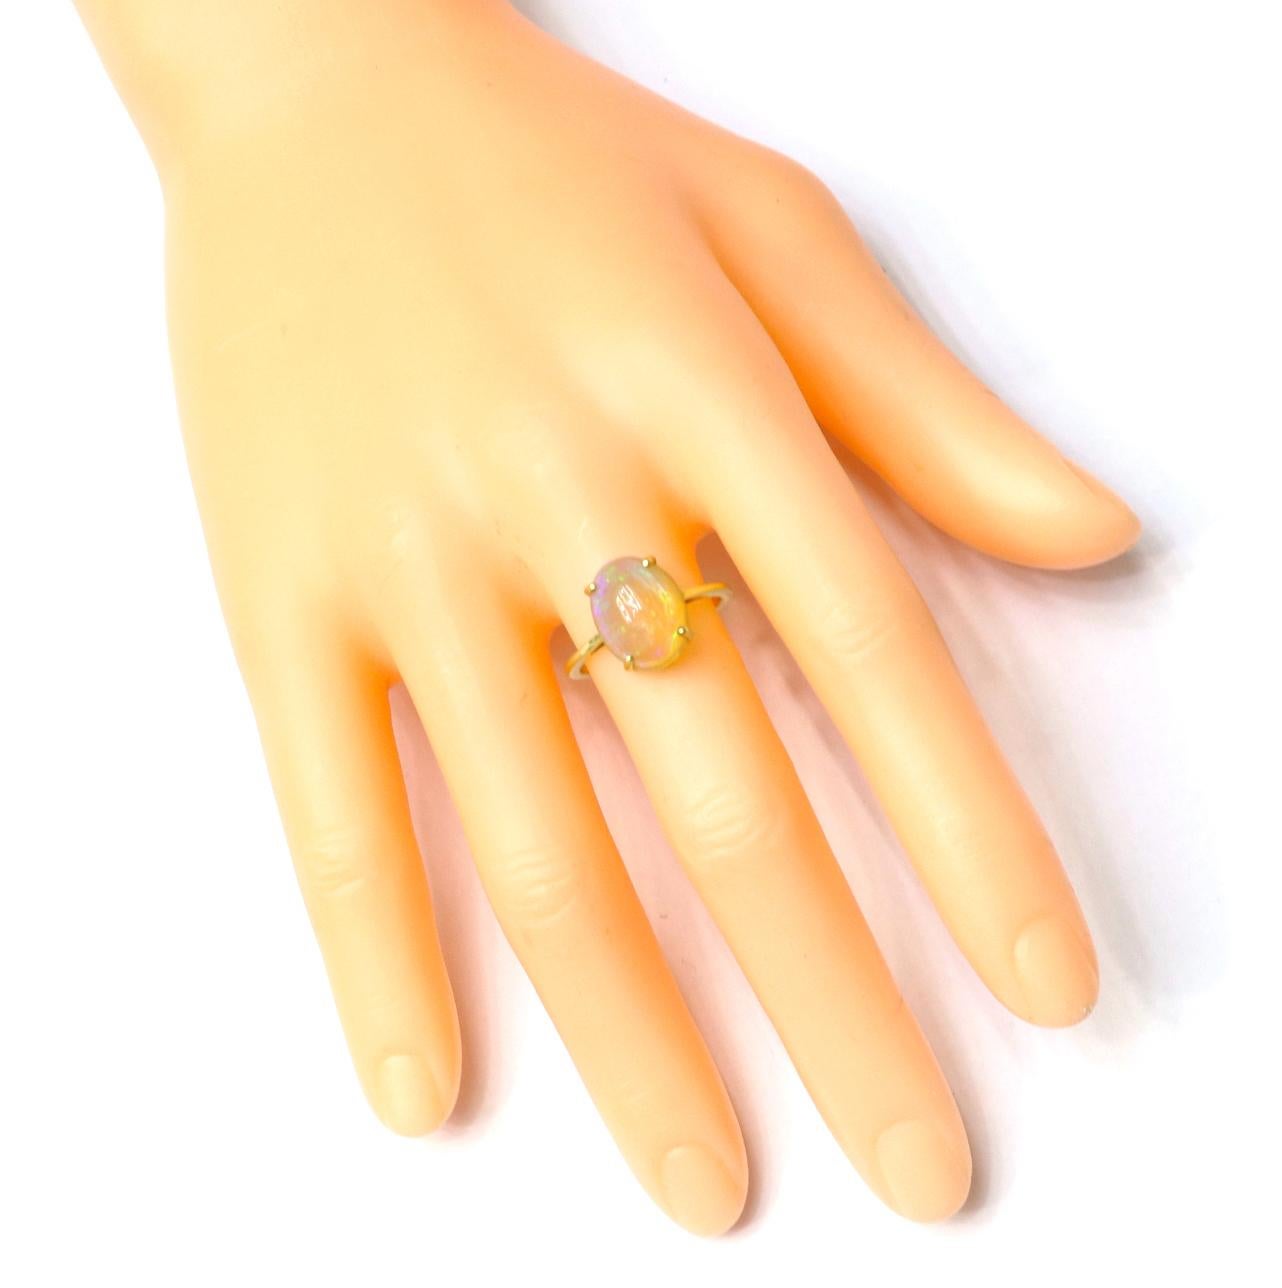 18 Karat Gelbgold 3,71 Karat Opal Solitär Ring

Dieser Statement-Opalring ist vom Mond inspiriert. Mit einem Opal im Ovalschliff und in einer Vier-Zacken-Fassung glitzert er wie der Mond. Der Ring ist mit einem Gelbgoldband versehen, das für einen